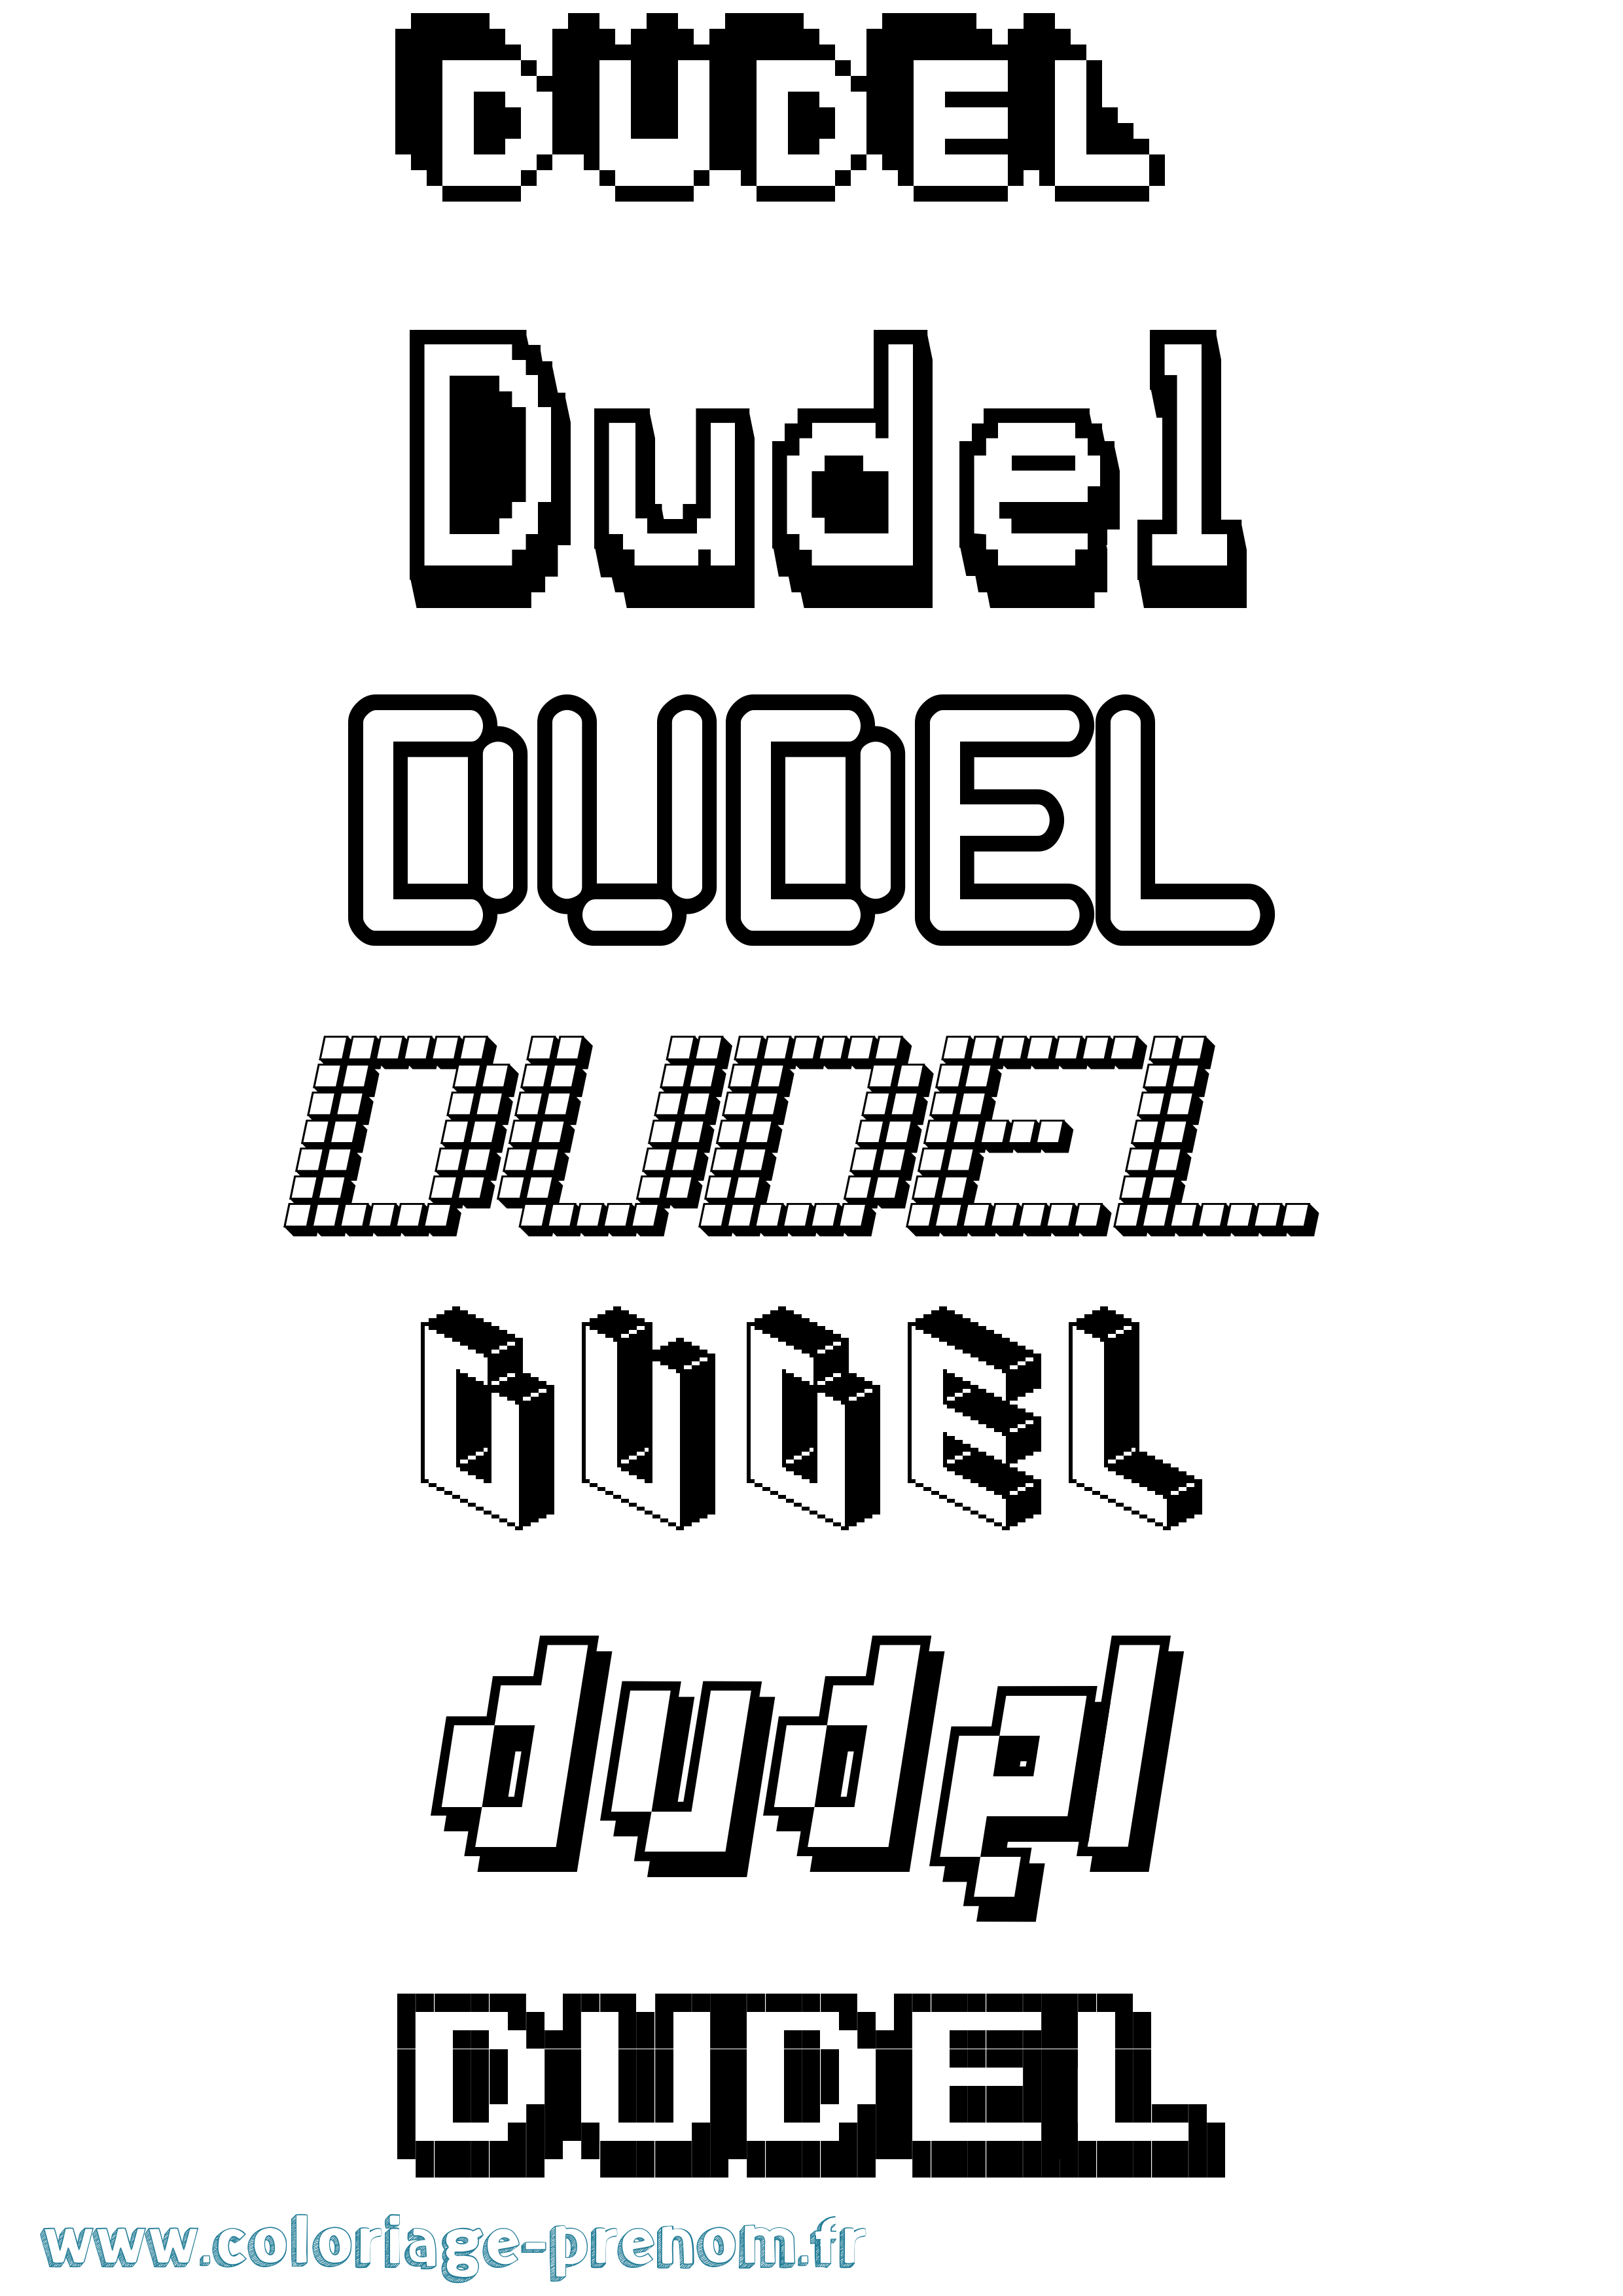 Coloriage prénom Dudel Pixel